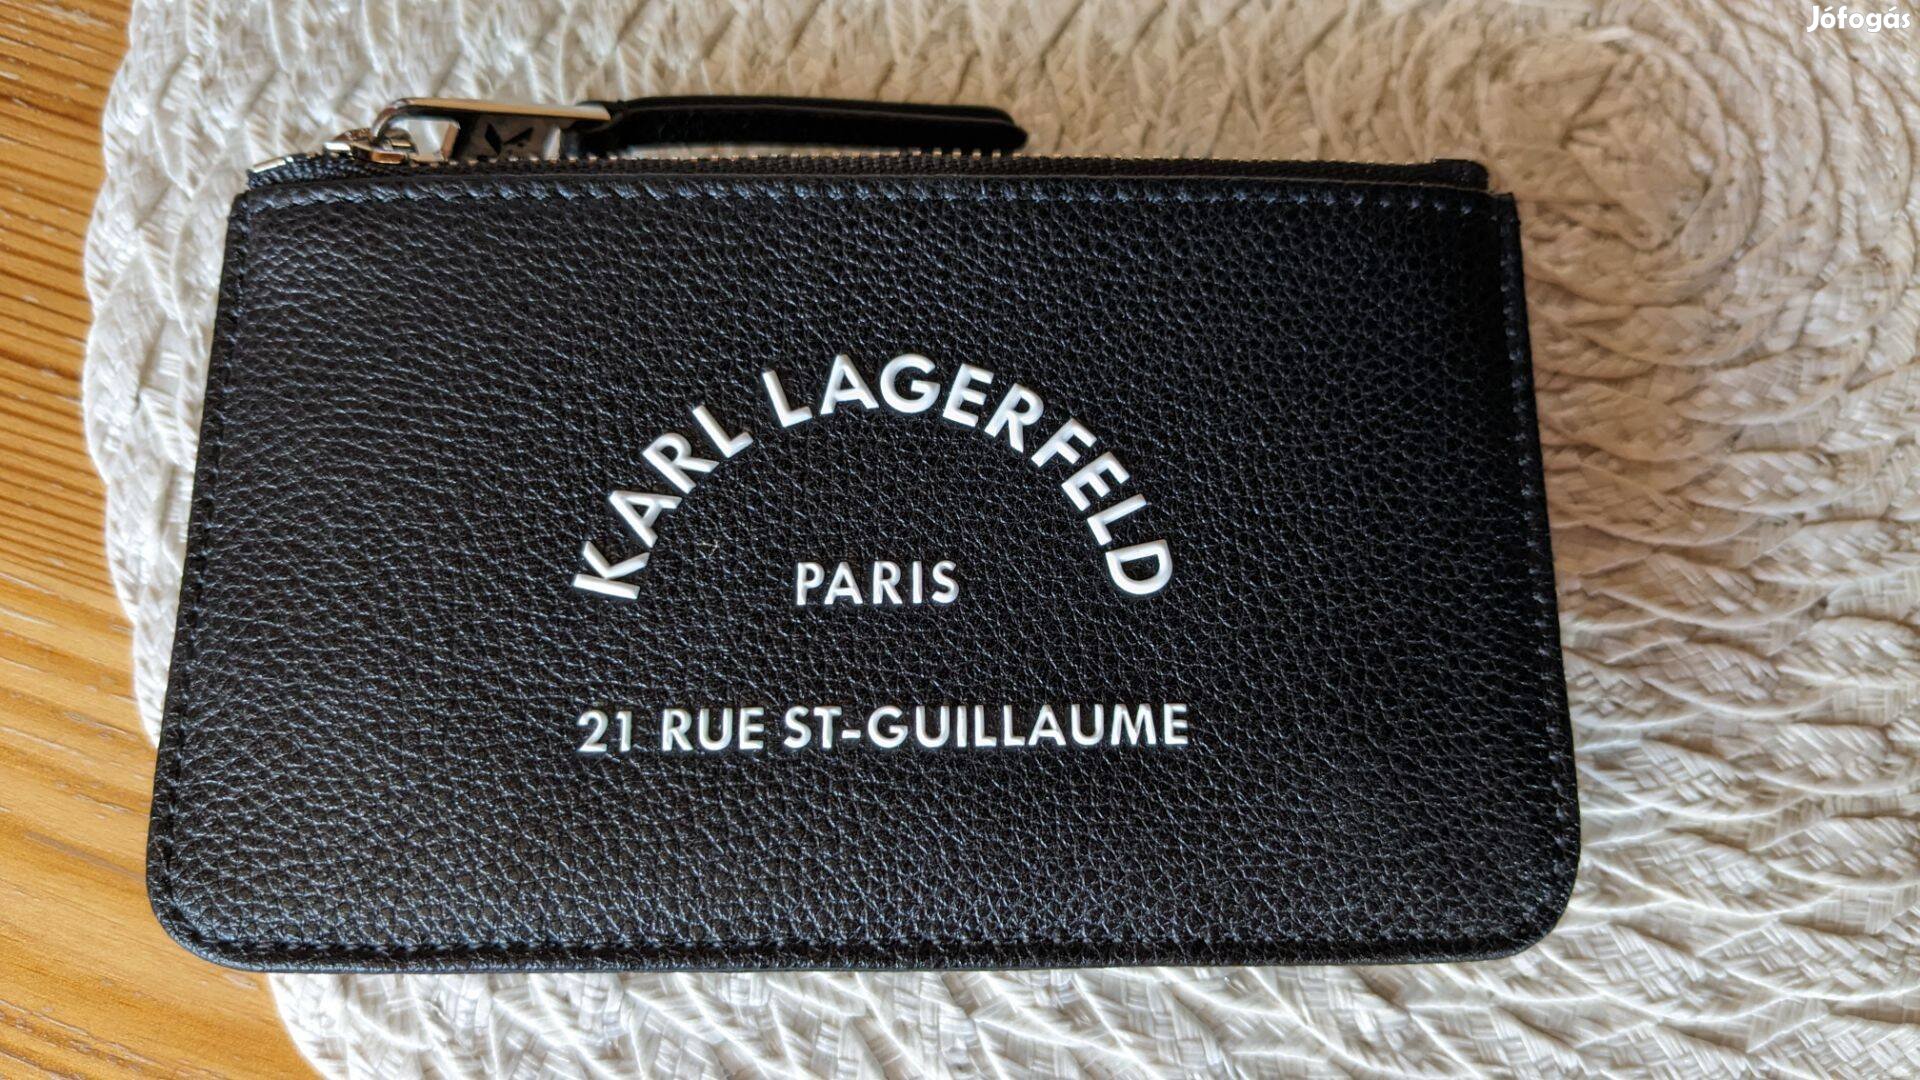 Karl Lagerfeld pénztárca